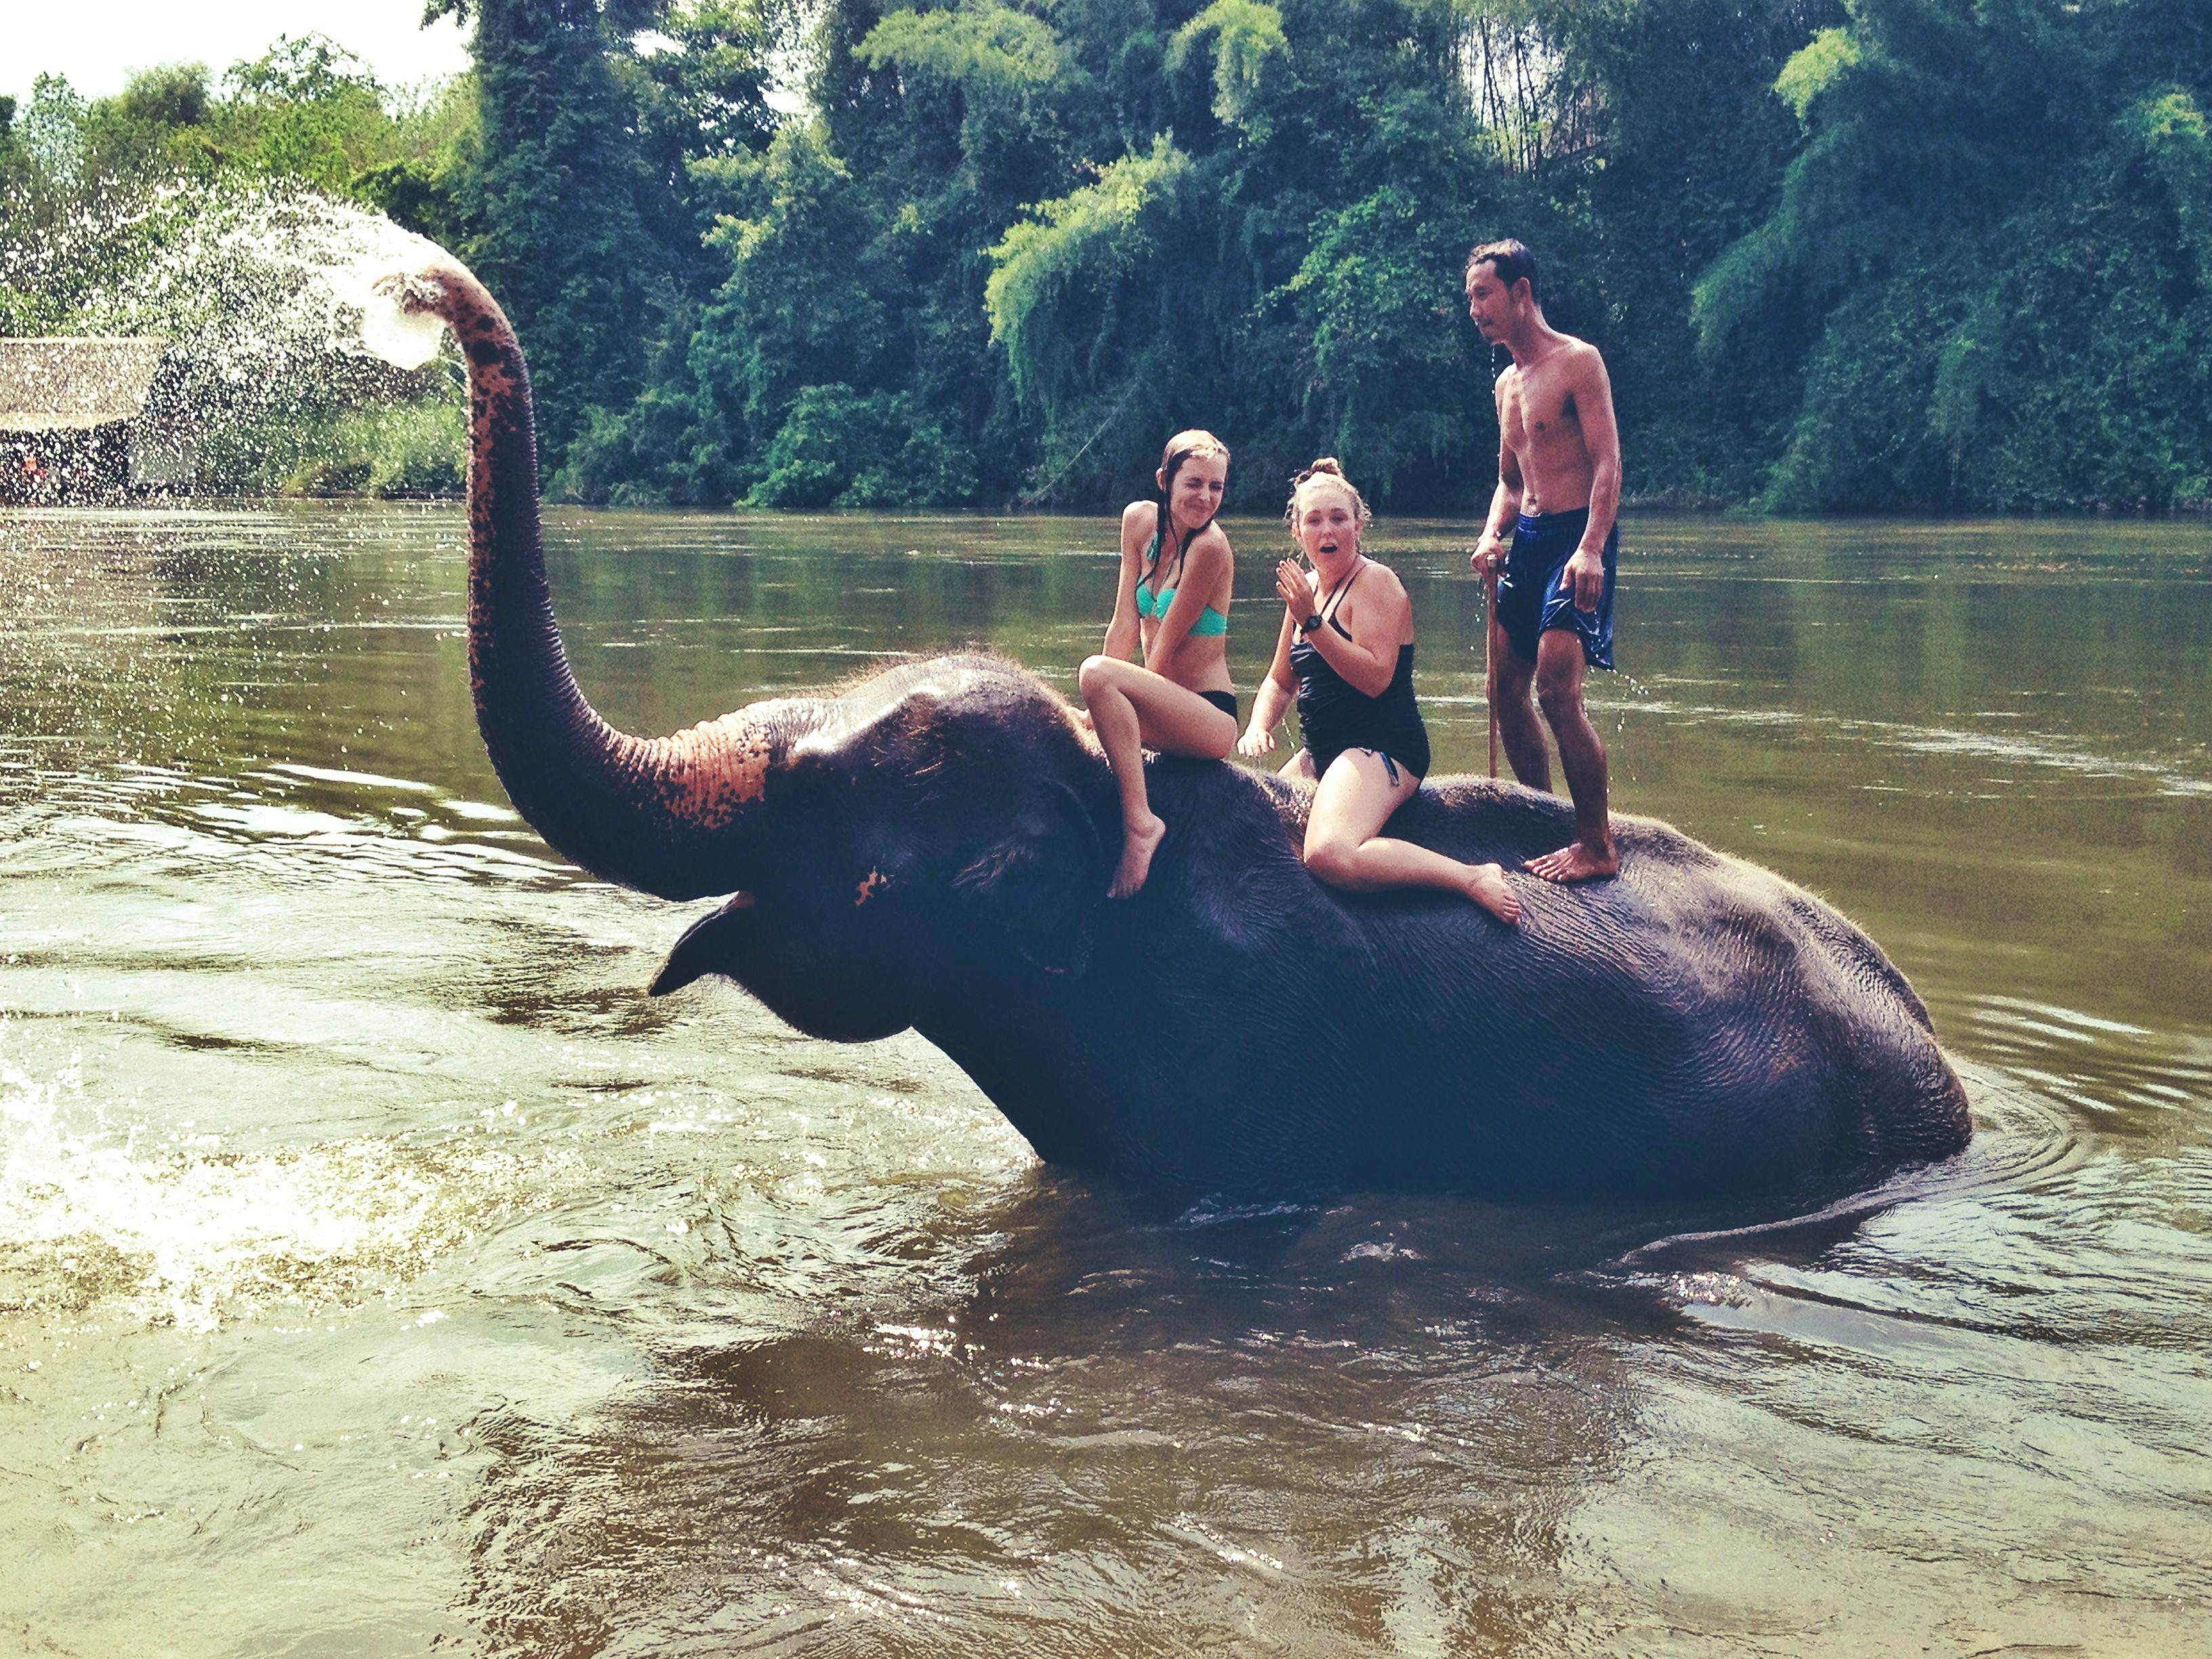 Feeding and Elephant Walk in 30 Mins + Enjoying Elephant Bathing (Pick up for hotels in Patong, Kata, Karon & Kamala)